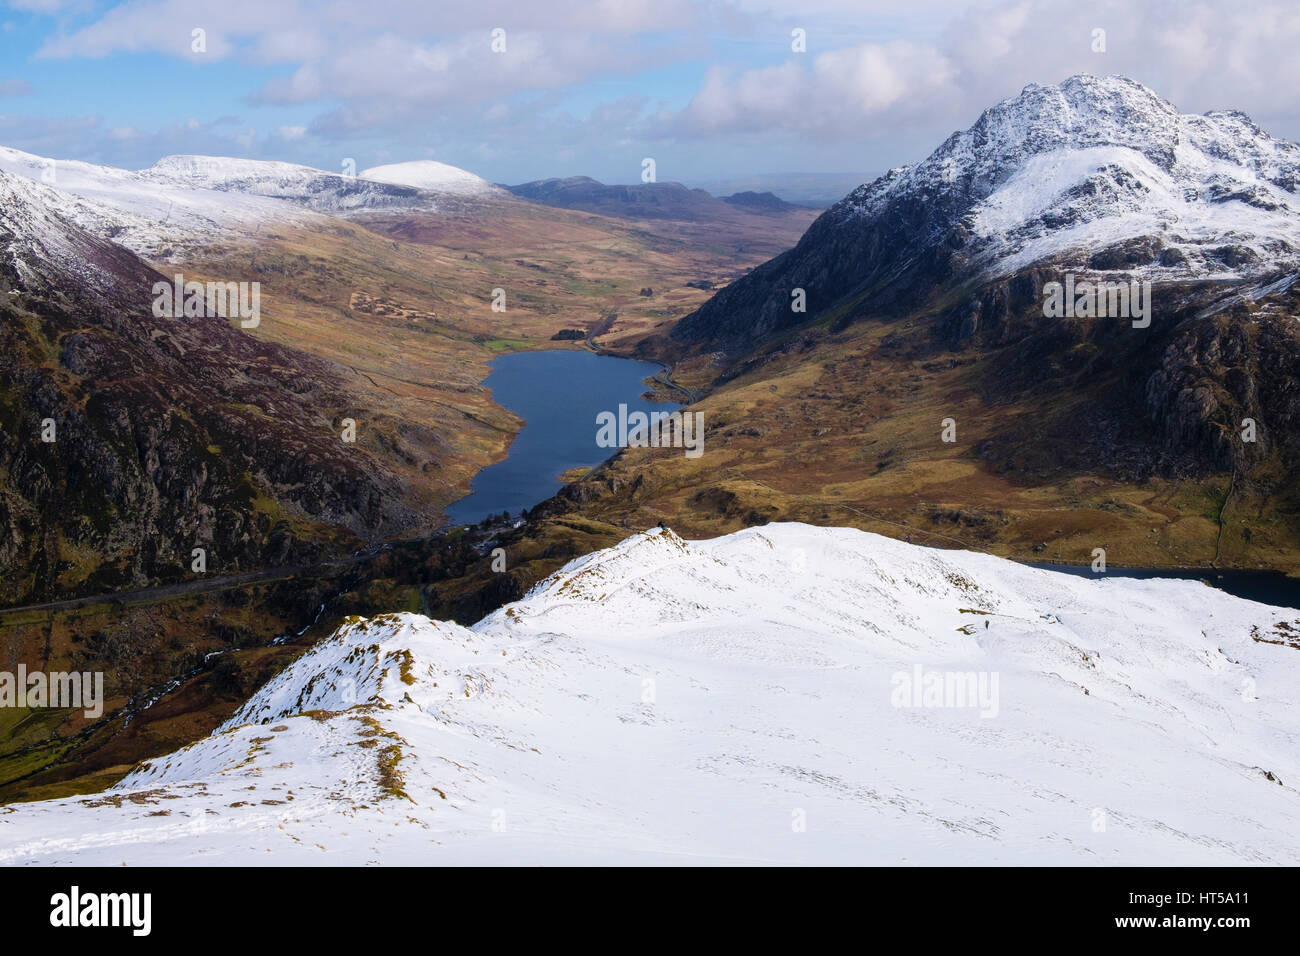 Vue d'Ogwen Haute Vallée et Mont de Tryfan Y Garn ridge avec de la neige dans les montagnes de Snowdonia National Park. Ogwen, Gwynedd, au nord du Pays de Galles, Royaume-Uni, Angleterre Banque D'Images